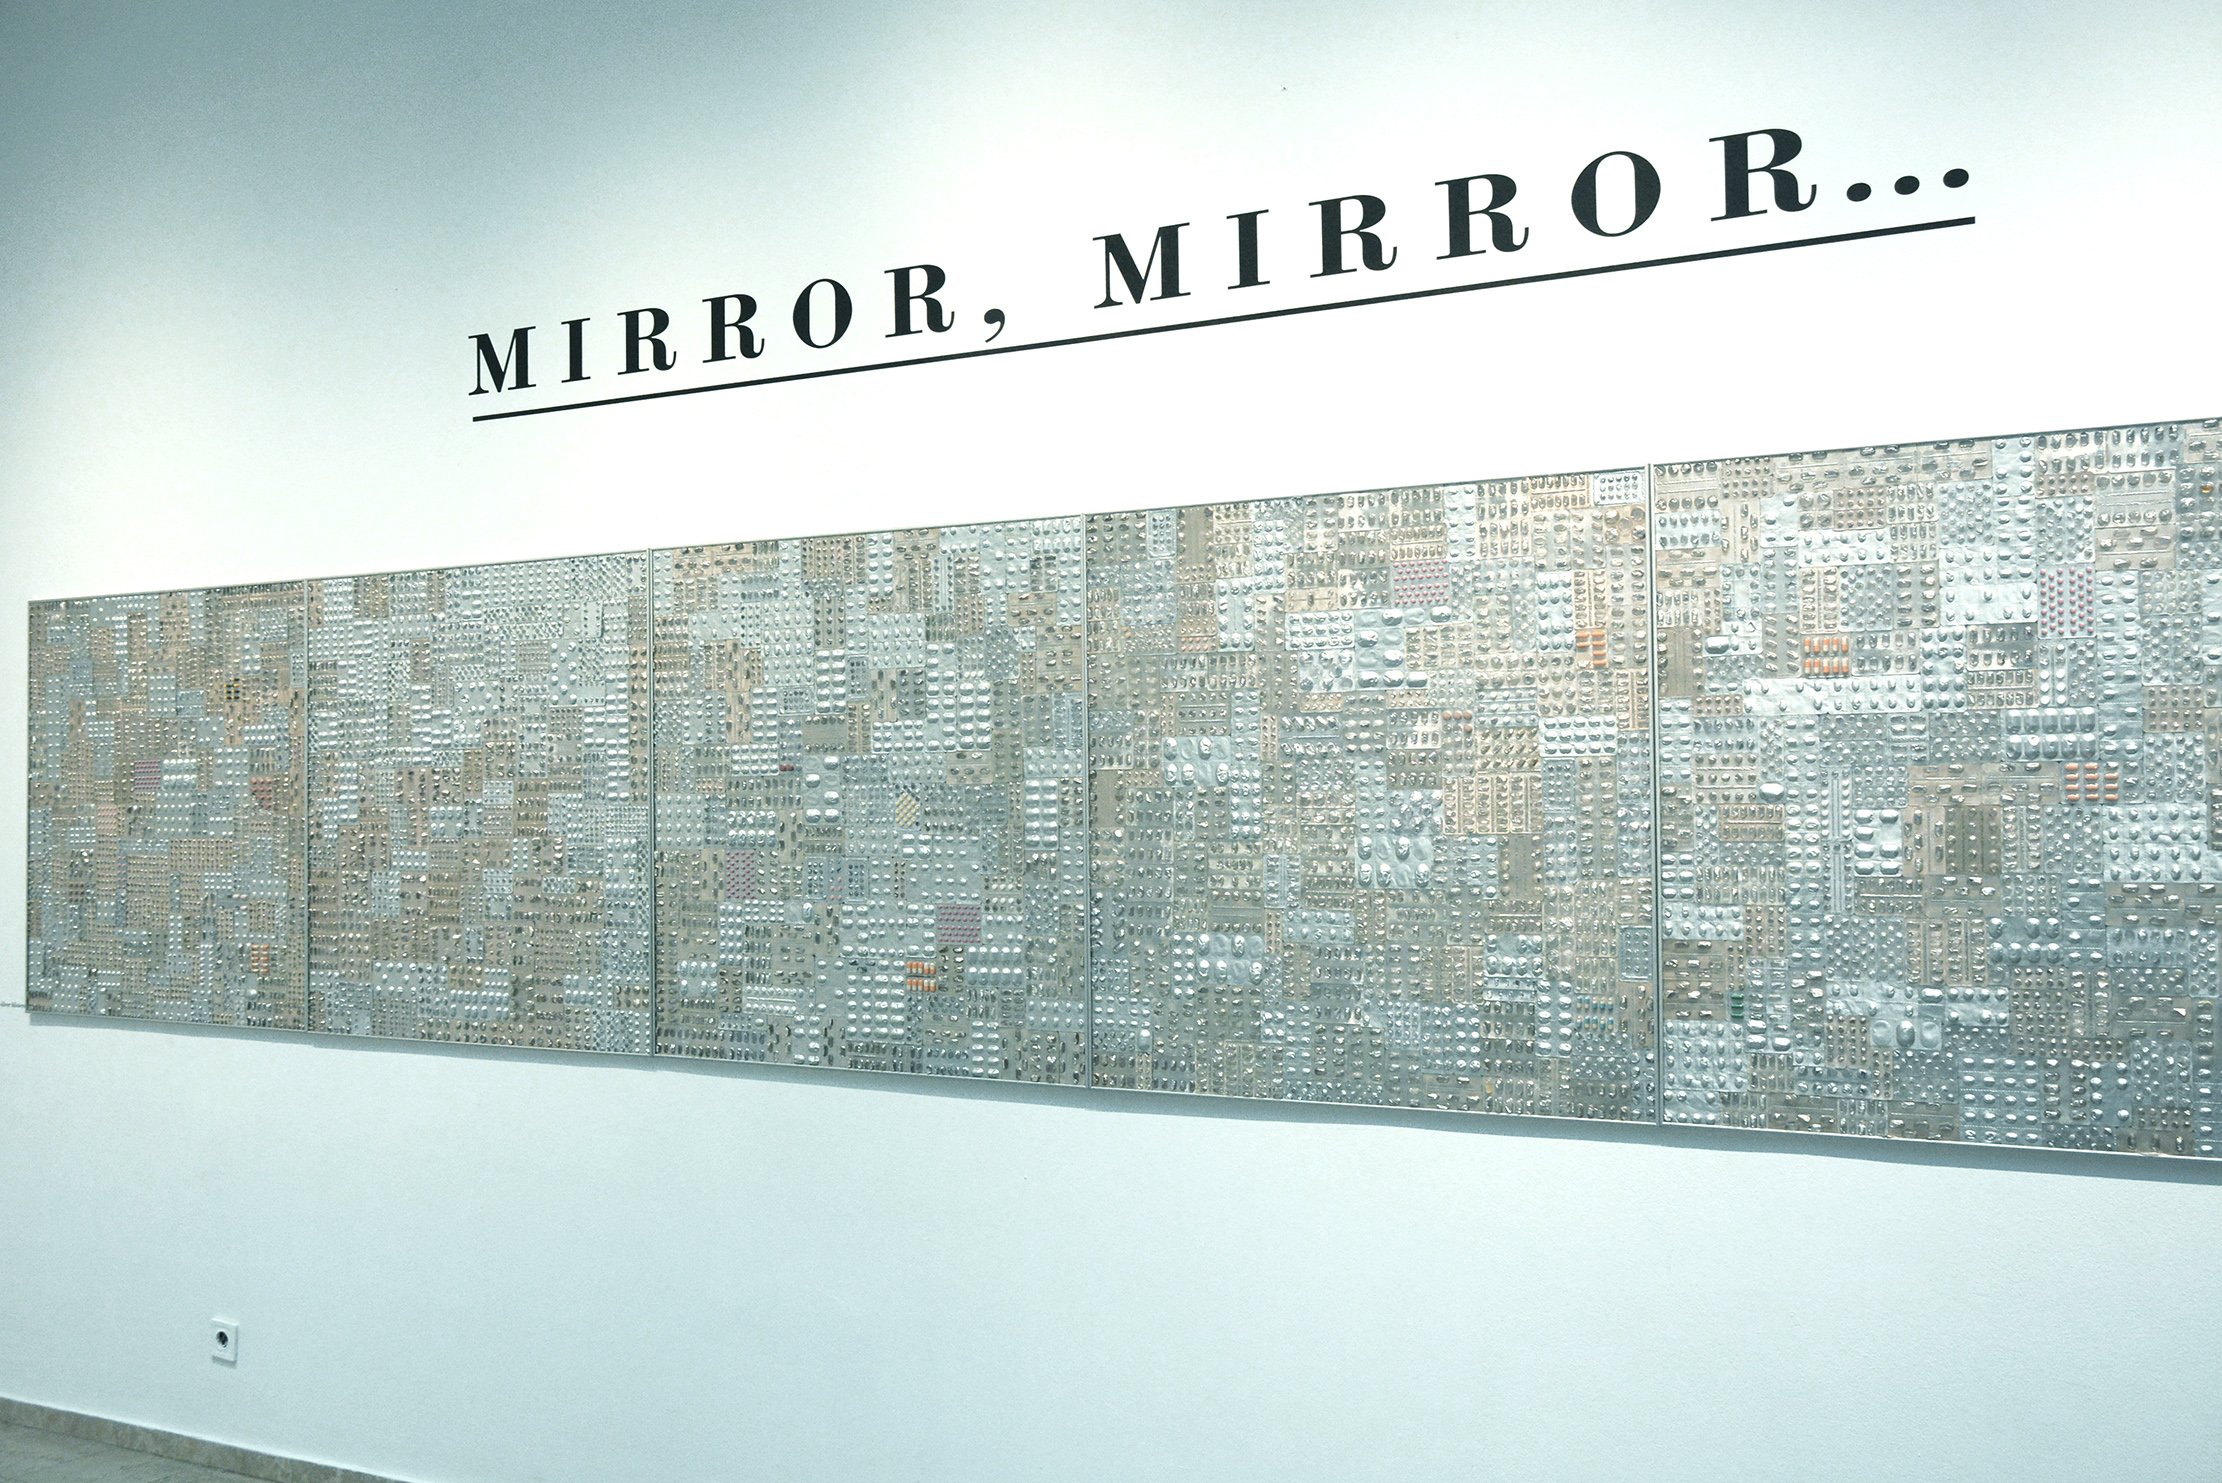  Mirror, Mirror, 2020, изглед от едноименната изложба в галерия Кредо Бонум, фотографията е предоставена от автора 